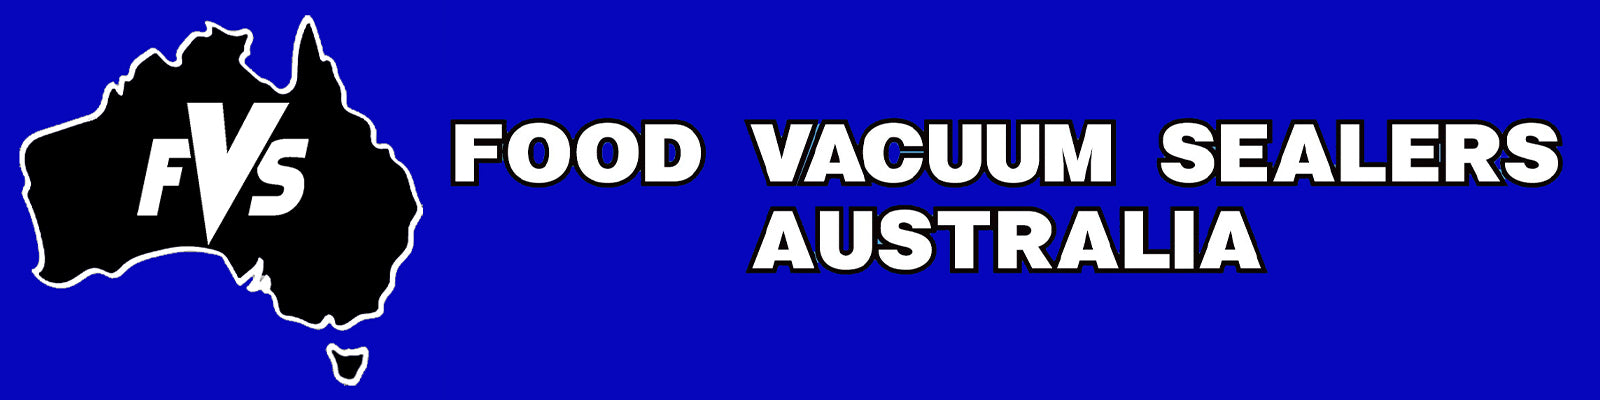 https://www.foodvacuumsealers.com.au/cdn/shop/files/Food-vacuum-sealers-australia-logo-full_jpg.jpg?v=1696472320&width=1600